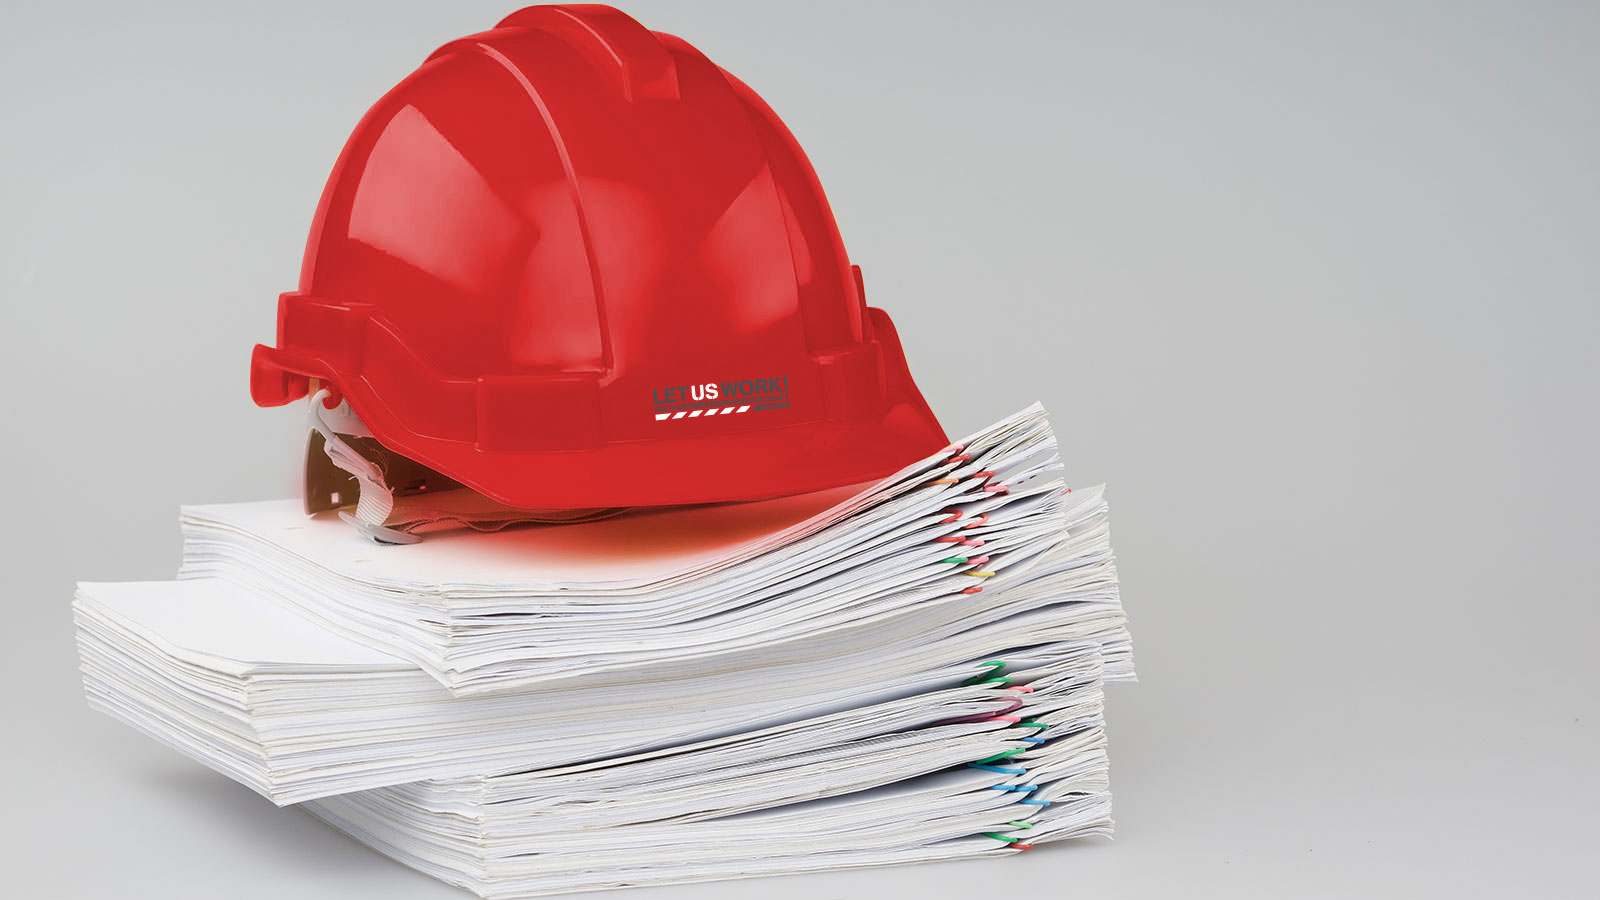 Vorschriften mit rotem Helm